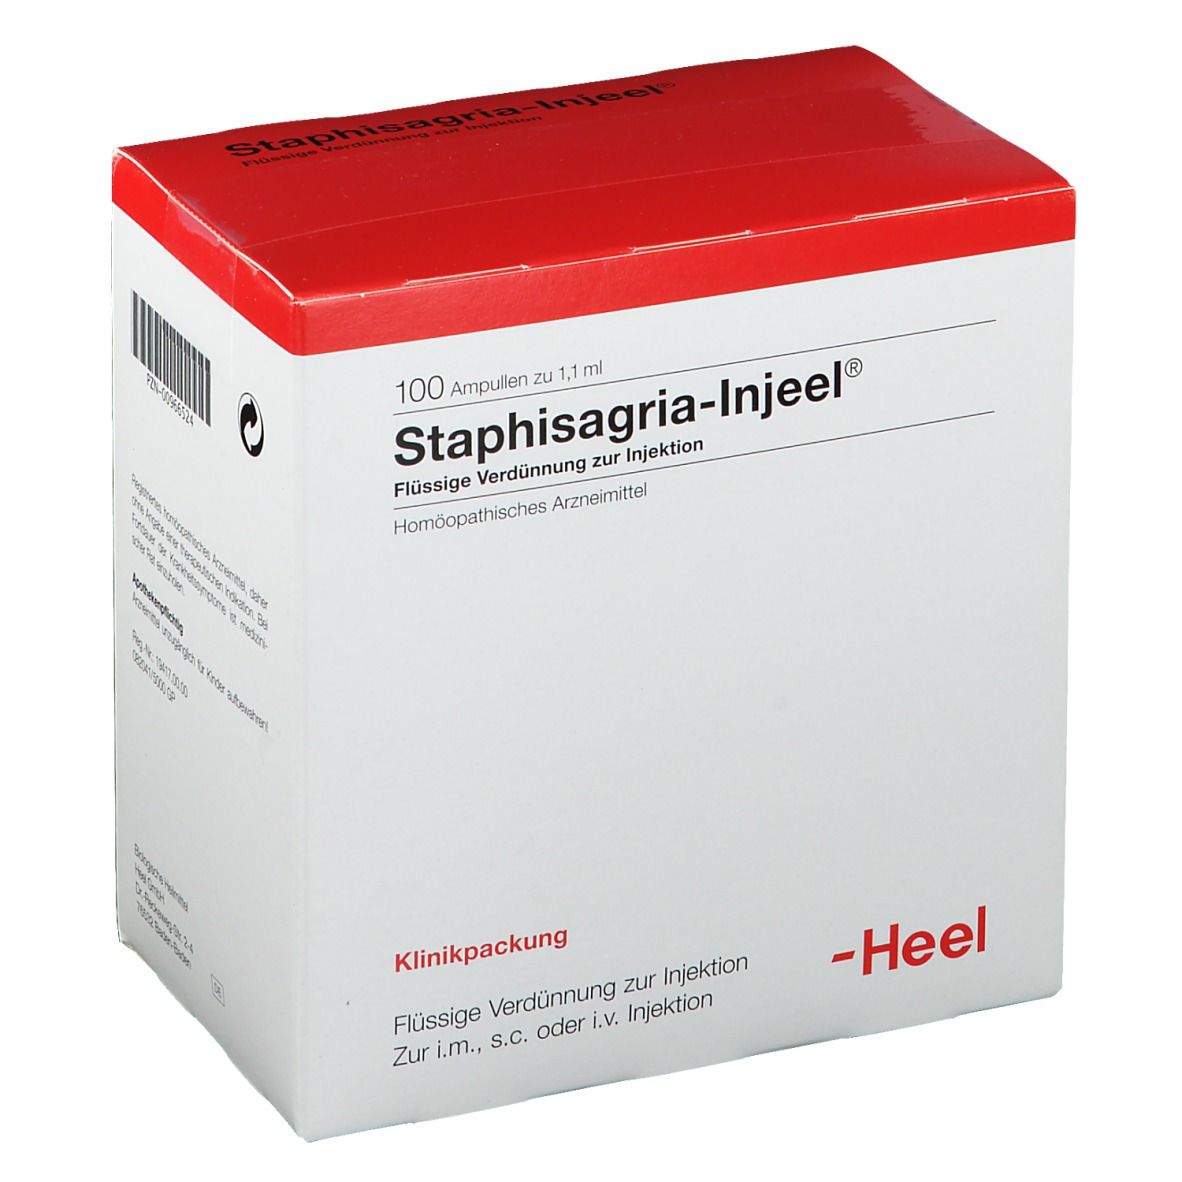 Staphisagria-Injeel® Ampullen